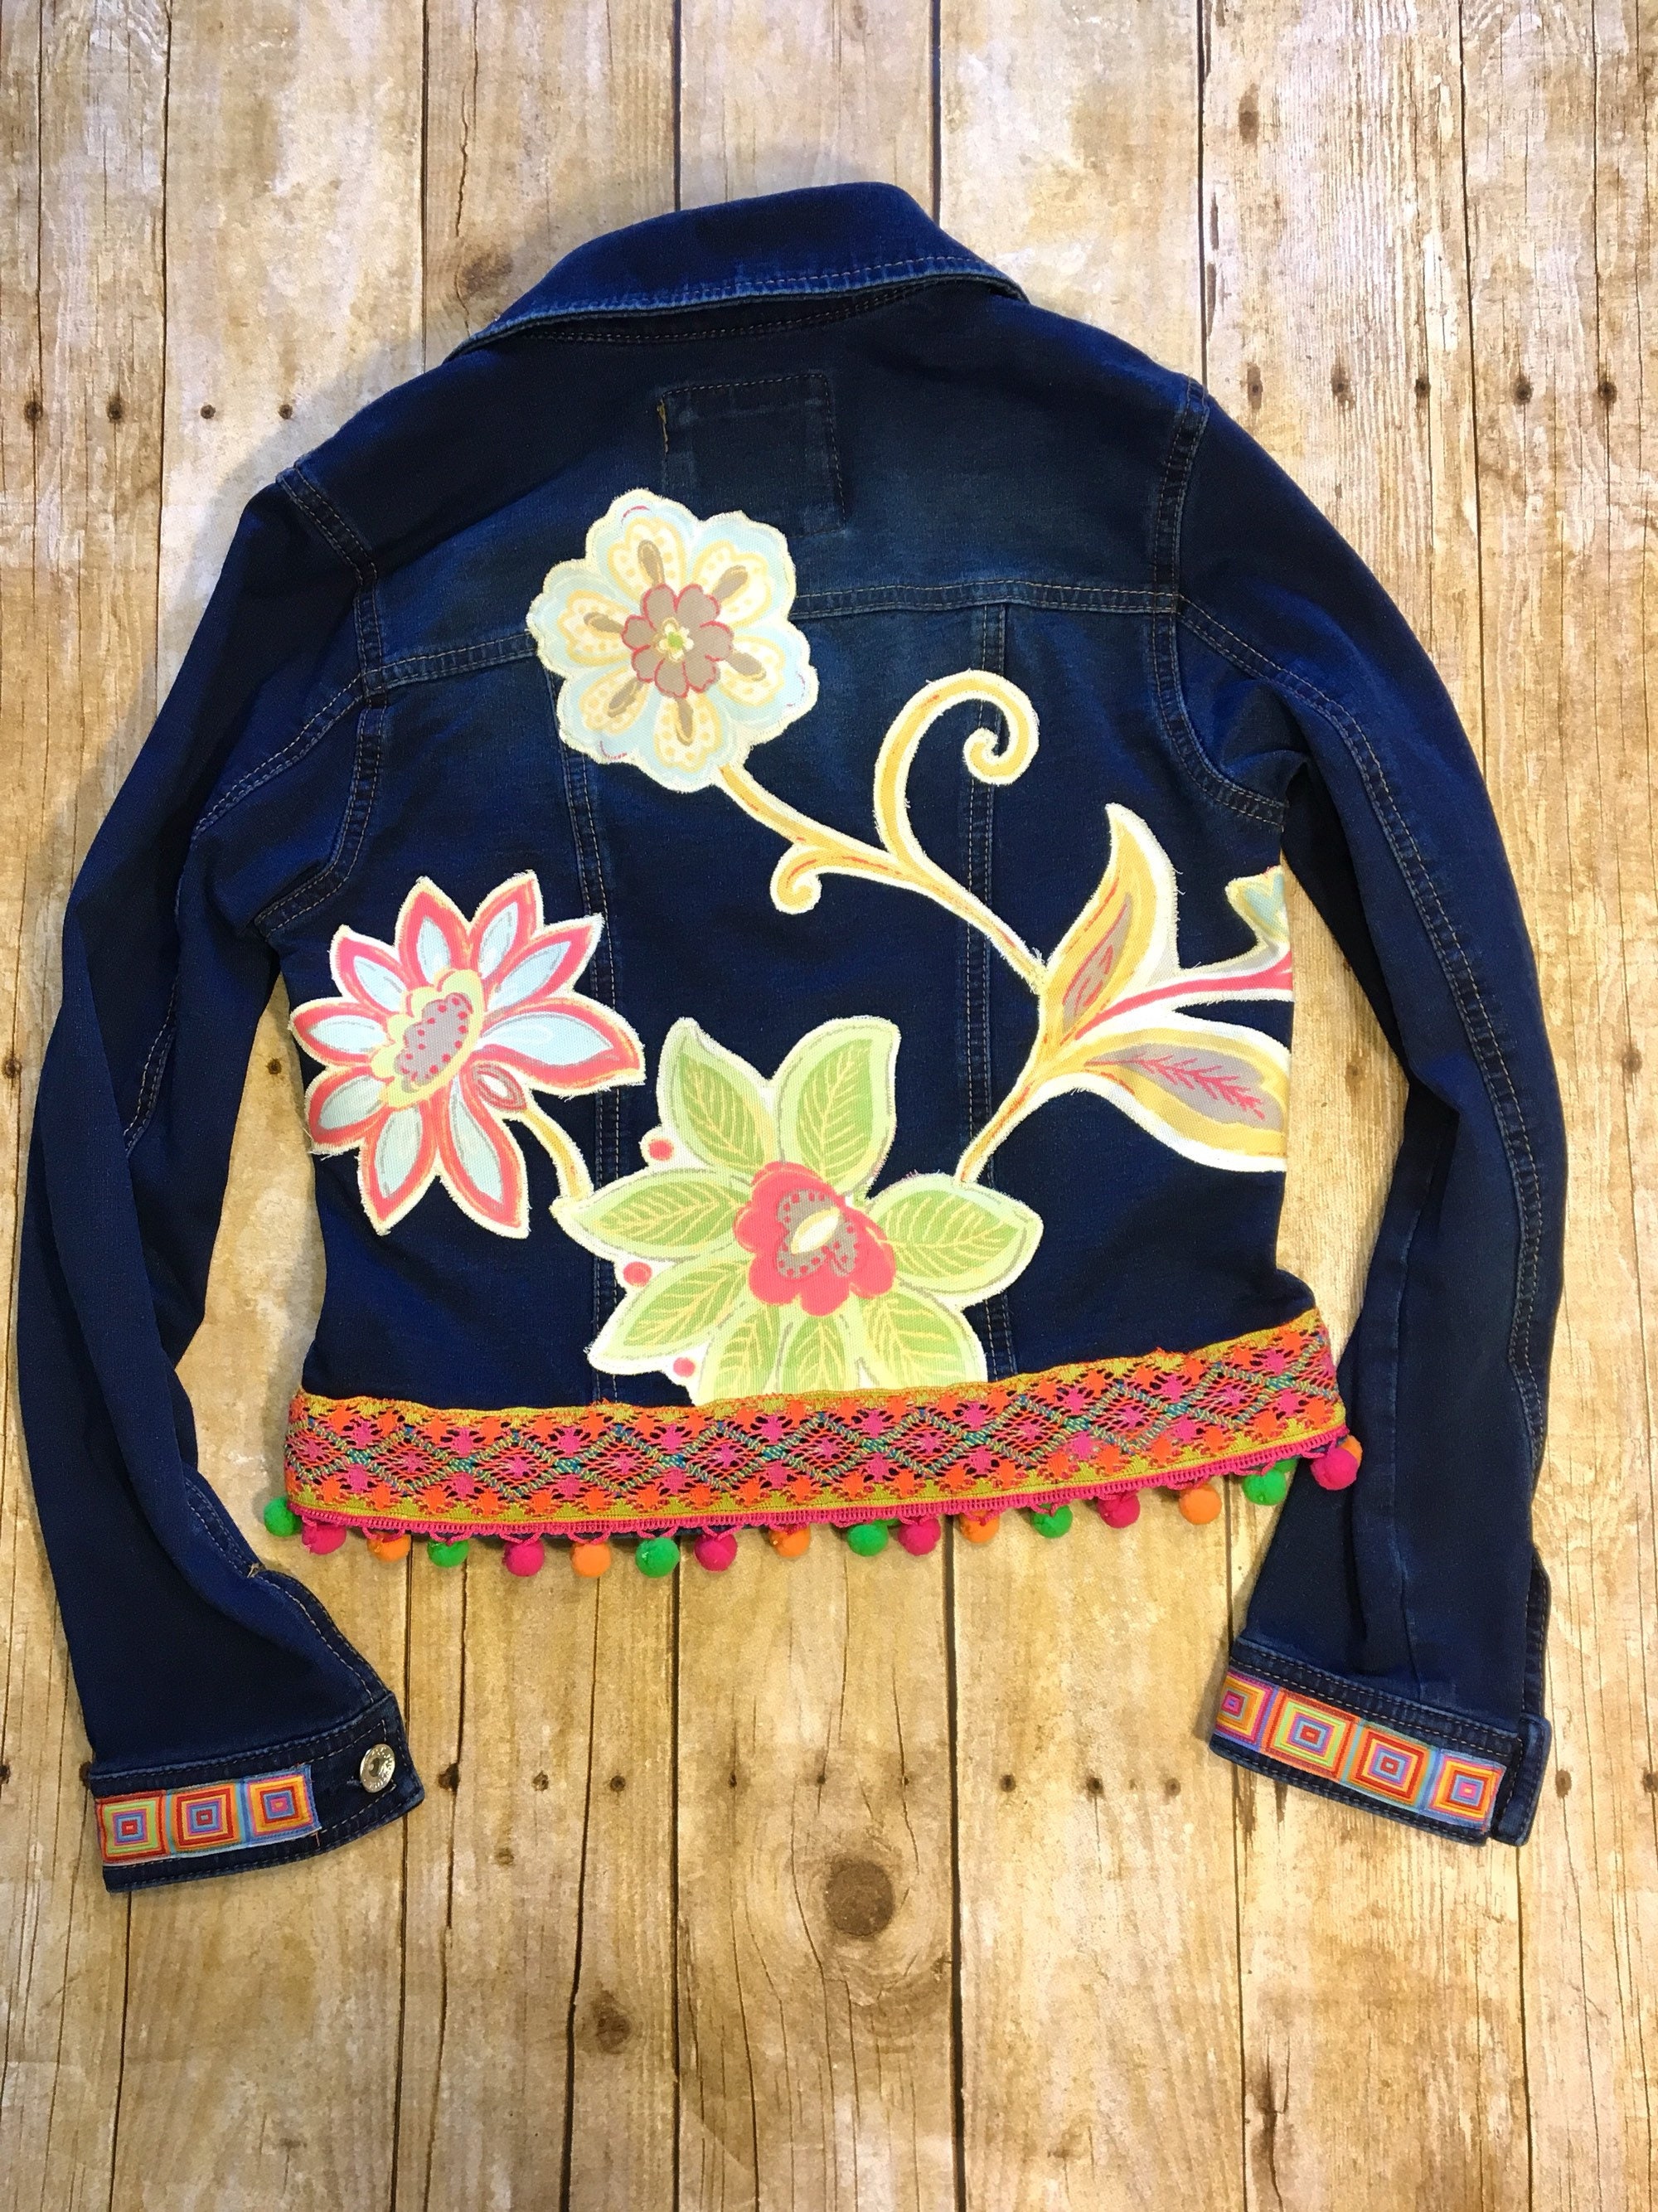 Embellished Jean Jacket Girl's Size 14 Upcycled Denim | Etsy